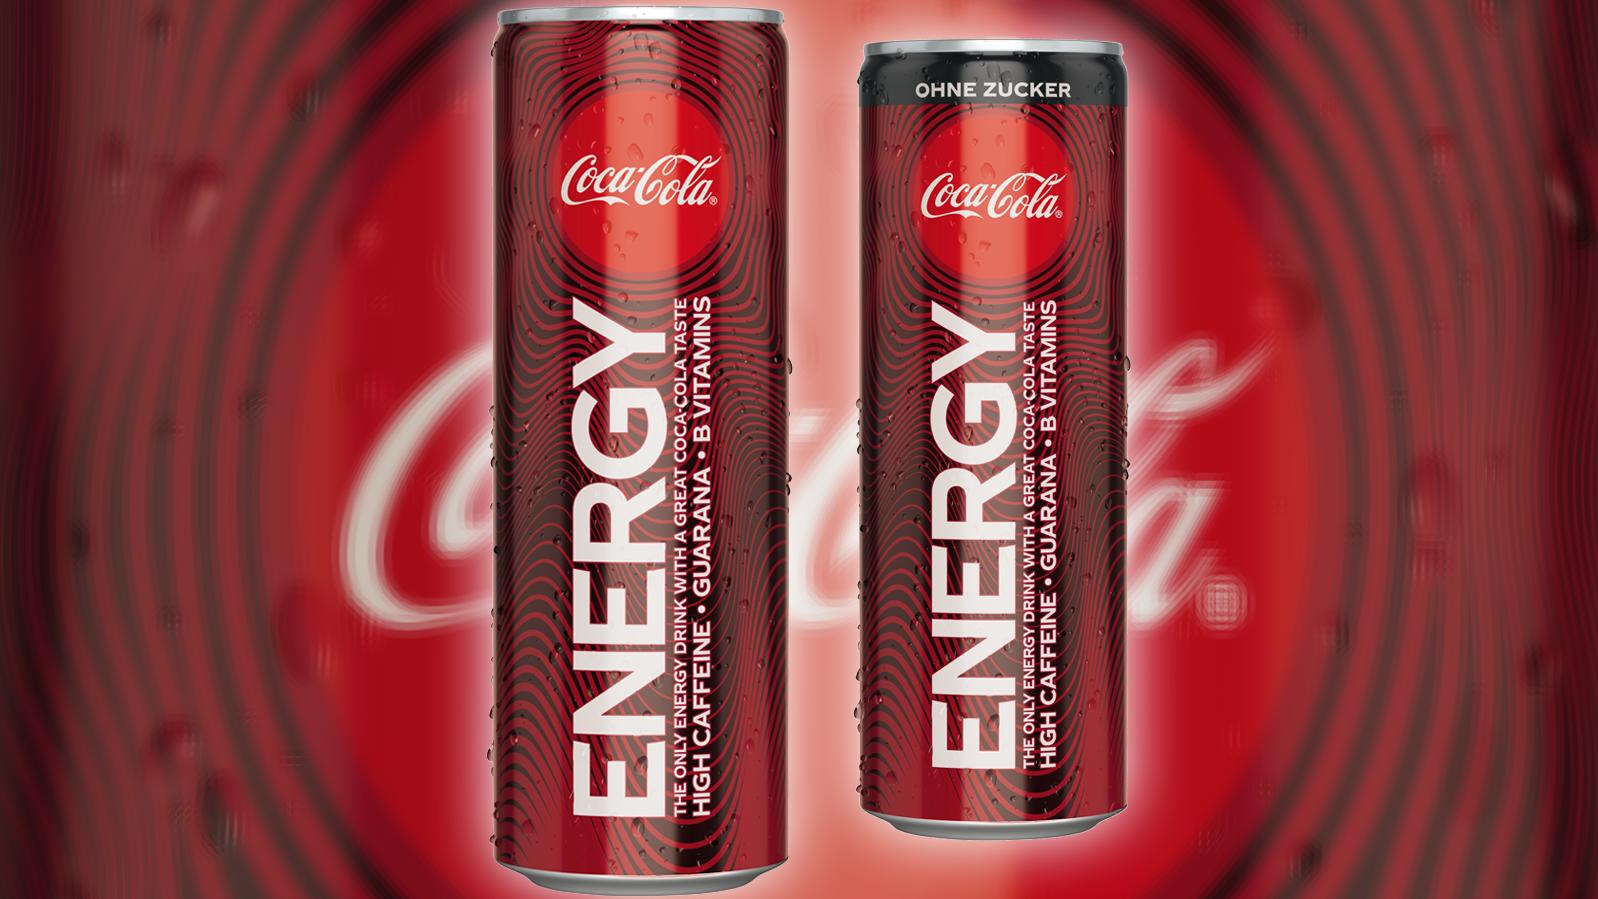 Den Energydrink von Coca-Cola gibt's in einer zuckerhaltigen und einer zuckerfreien Variante.